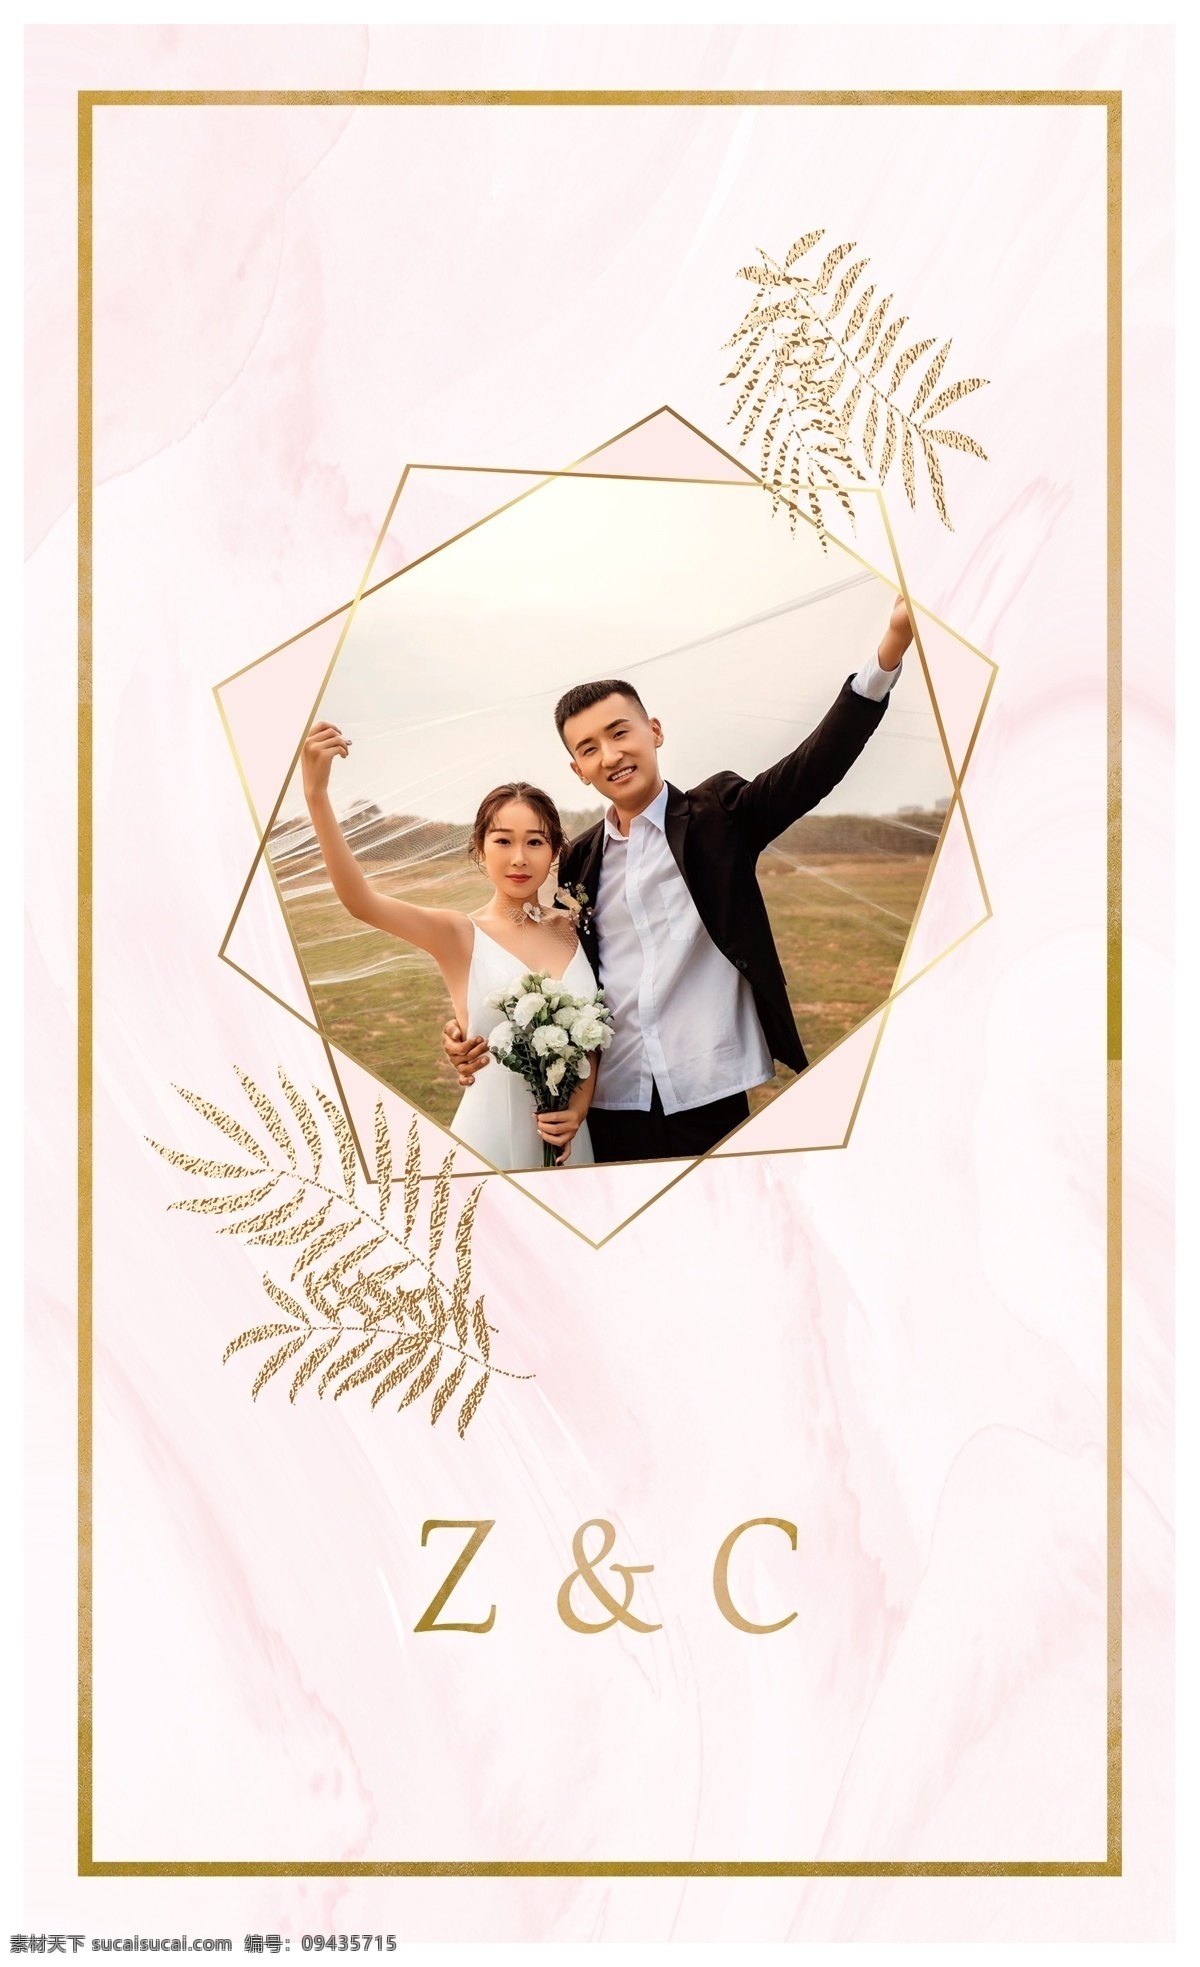 婚礼侧屏 婚礼 结婚 庆典 早场 侧屏 午场 叶子 金色 边条 粉色 大理石 纹路 婚礼主屏 2015素材 展板模板